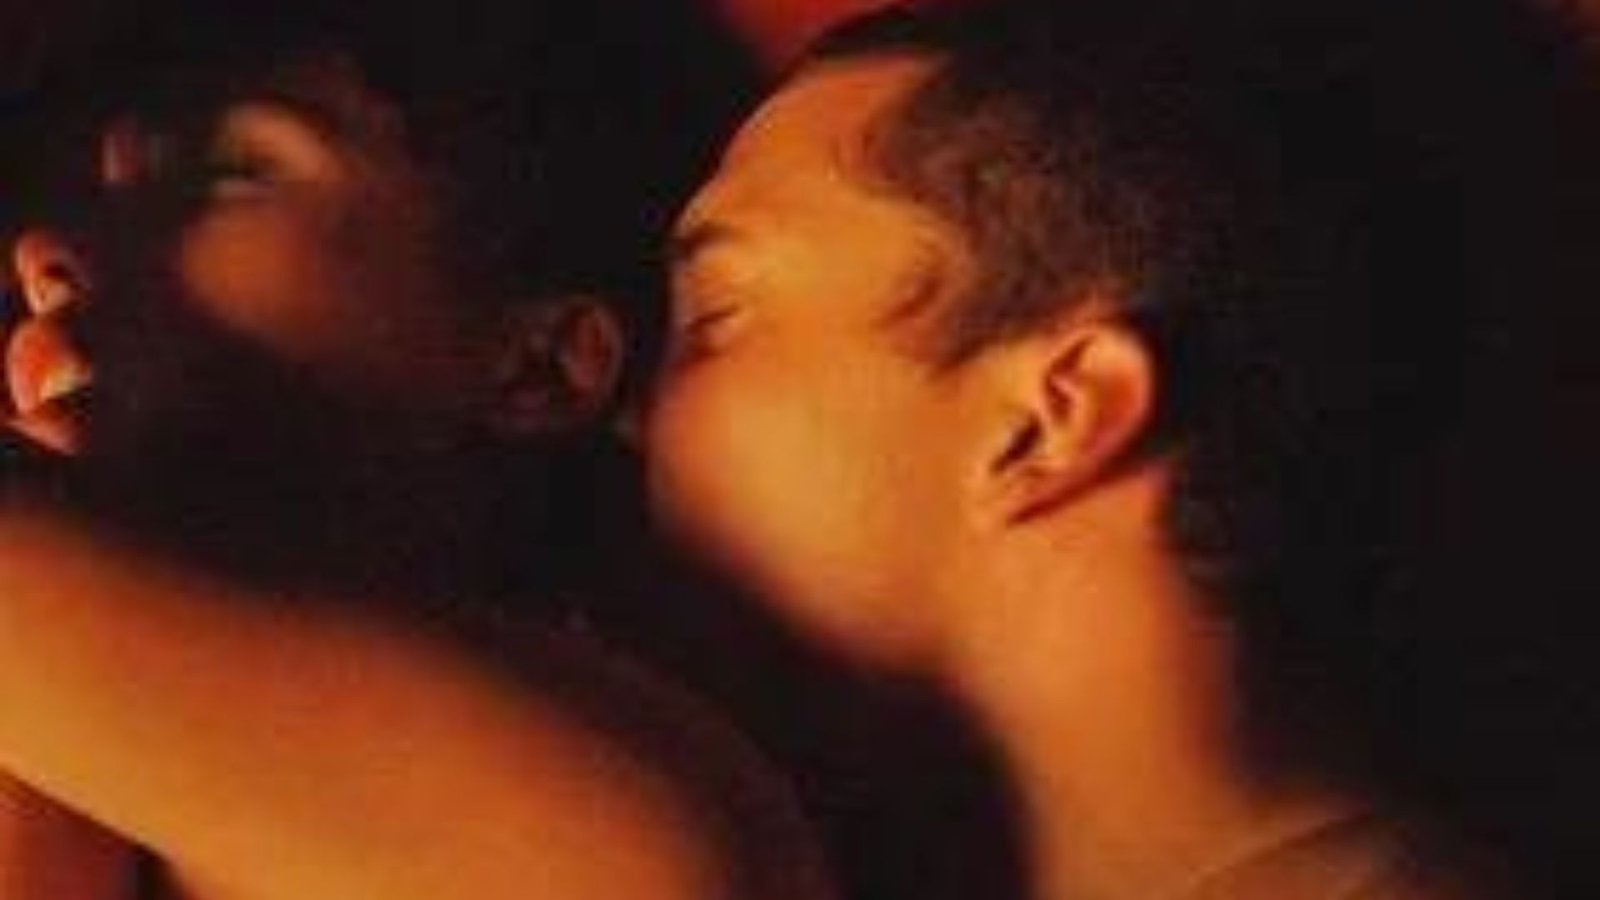 Tra “porno che fanno russare” e amori saffici lerotismo al festival di Cannes